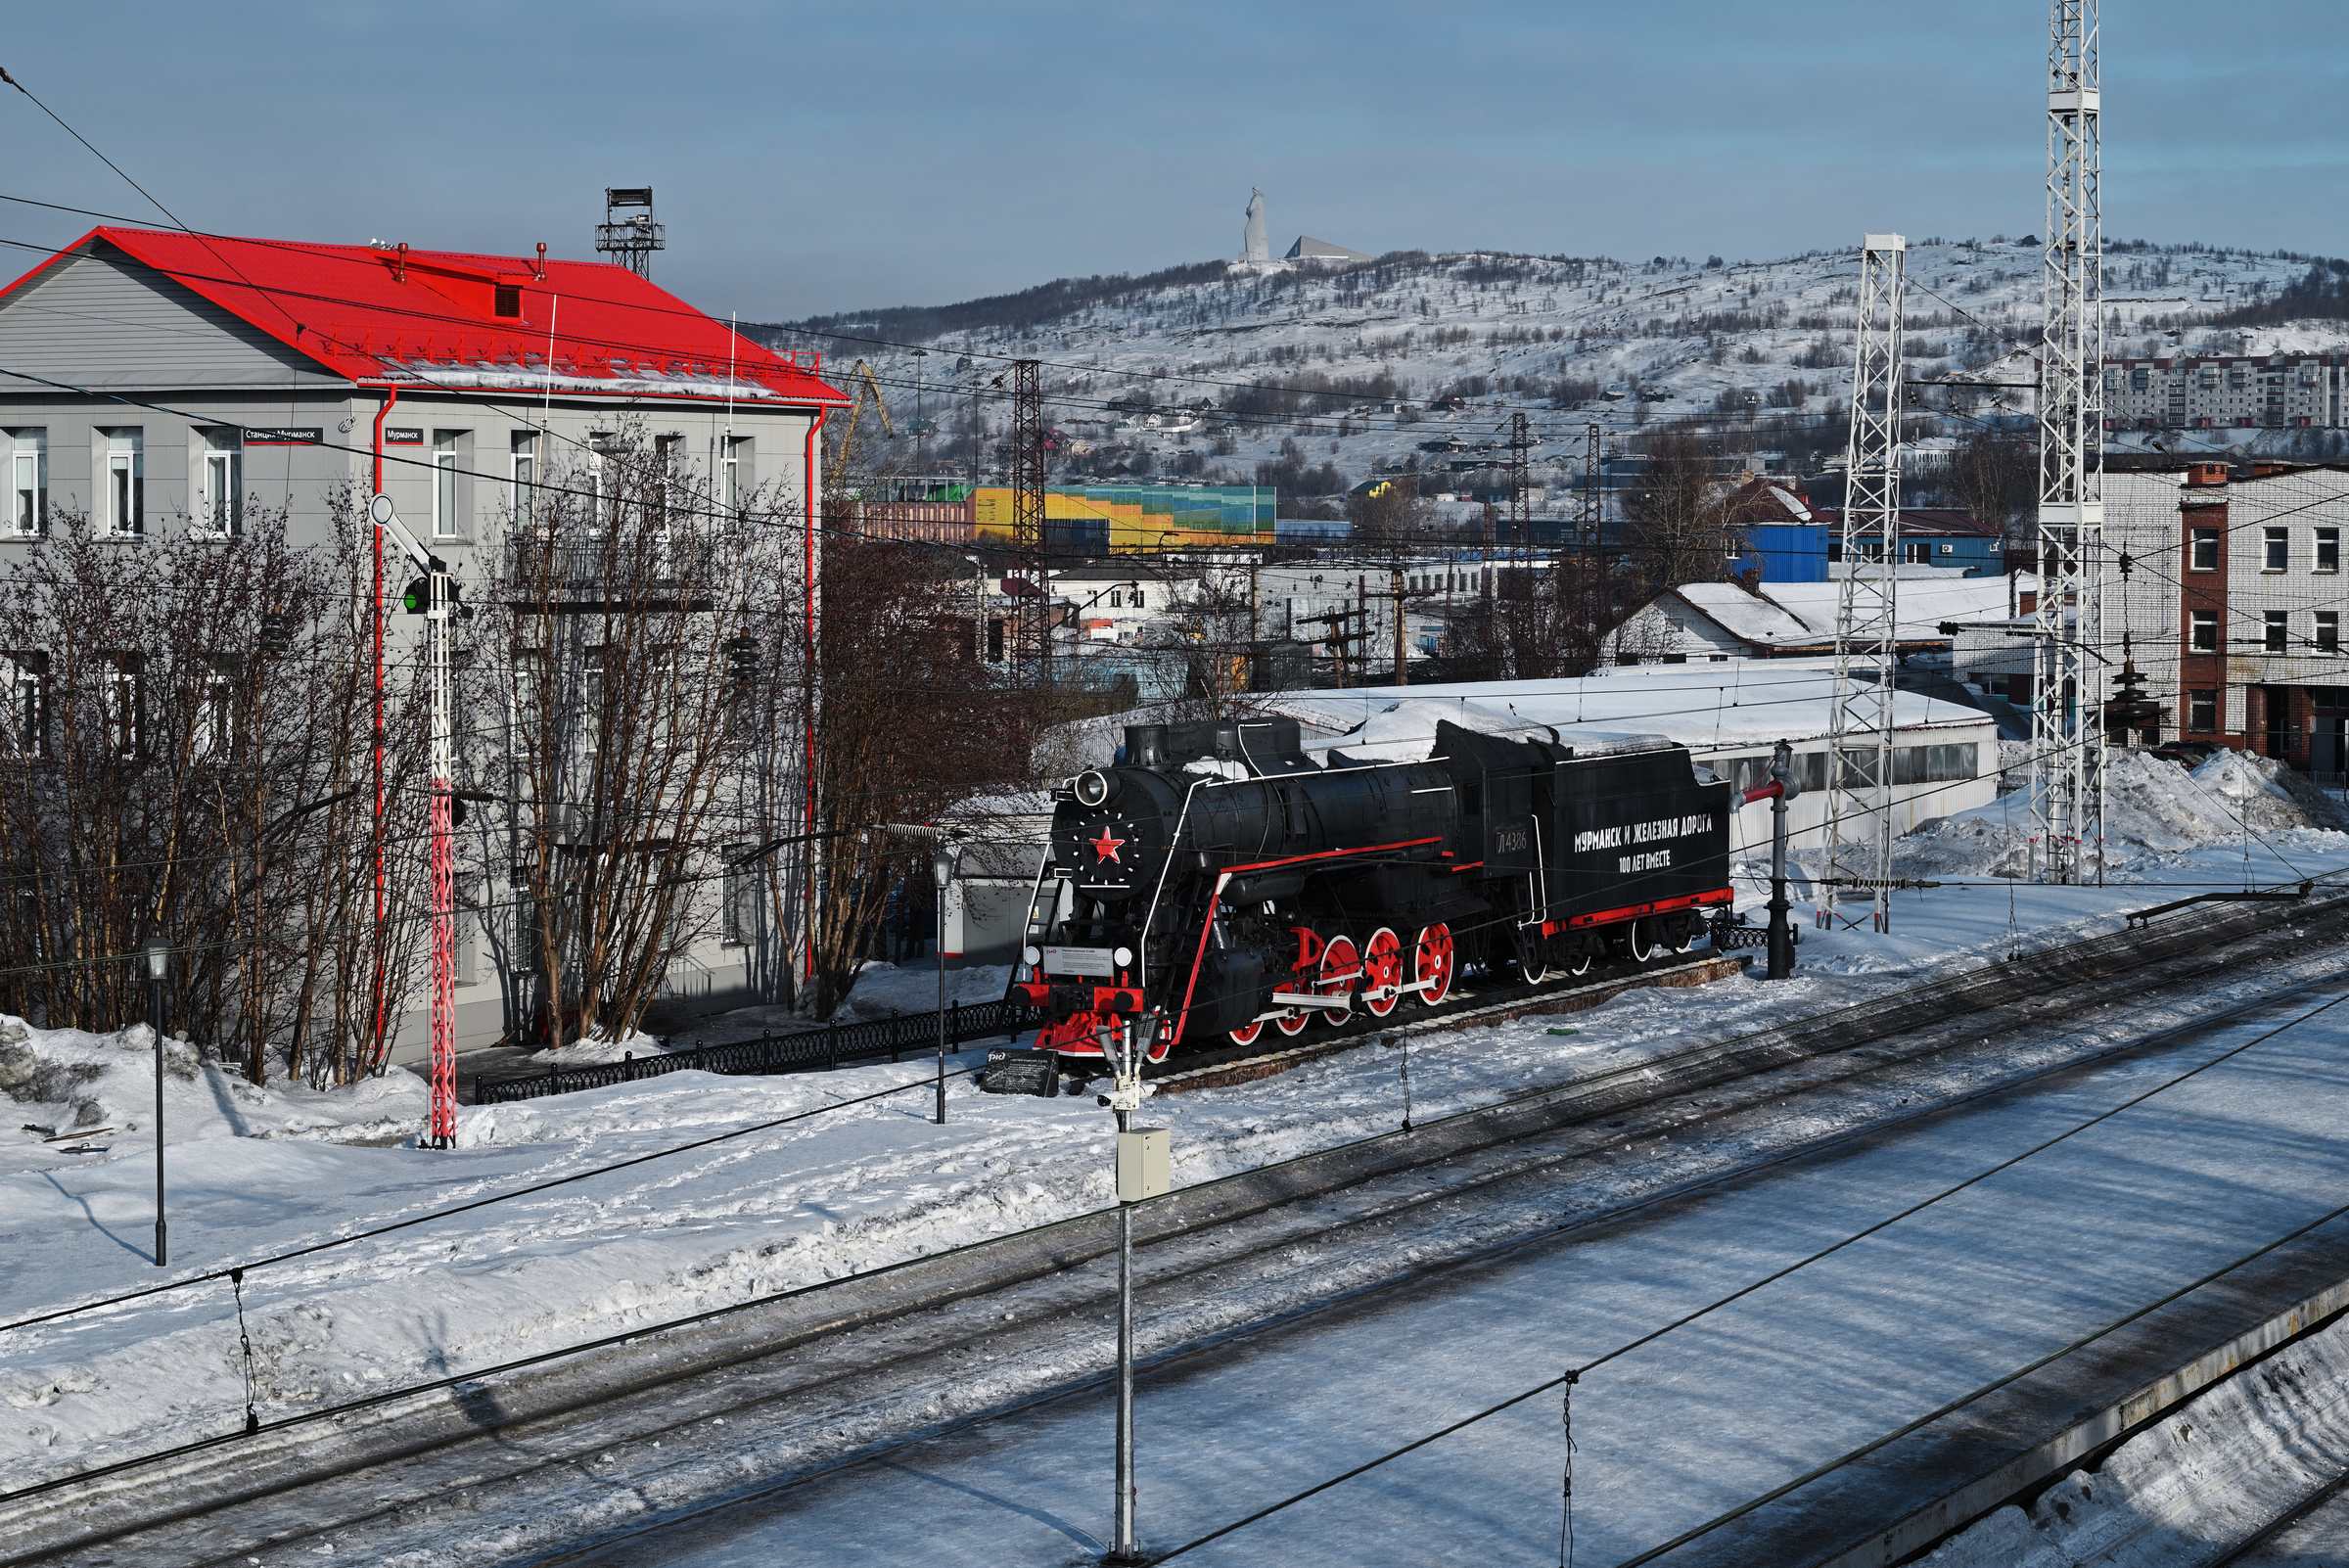 Мурманск в марте. Памятник паровозу Л-4386 на железнодорожная станции Мурманск.